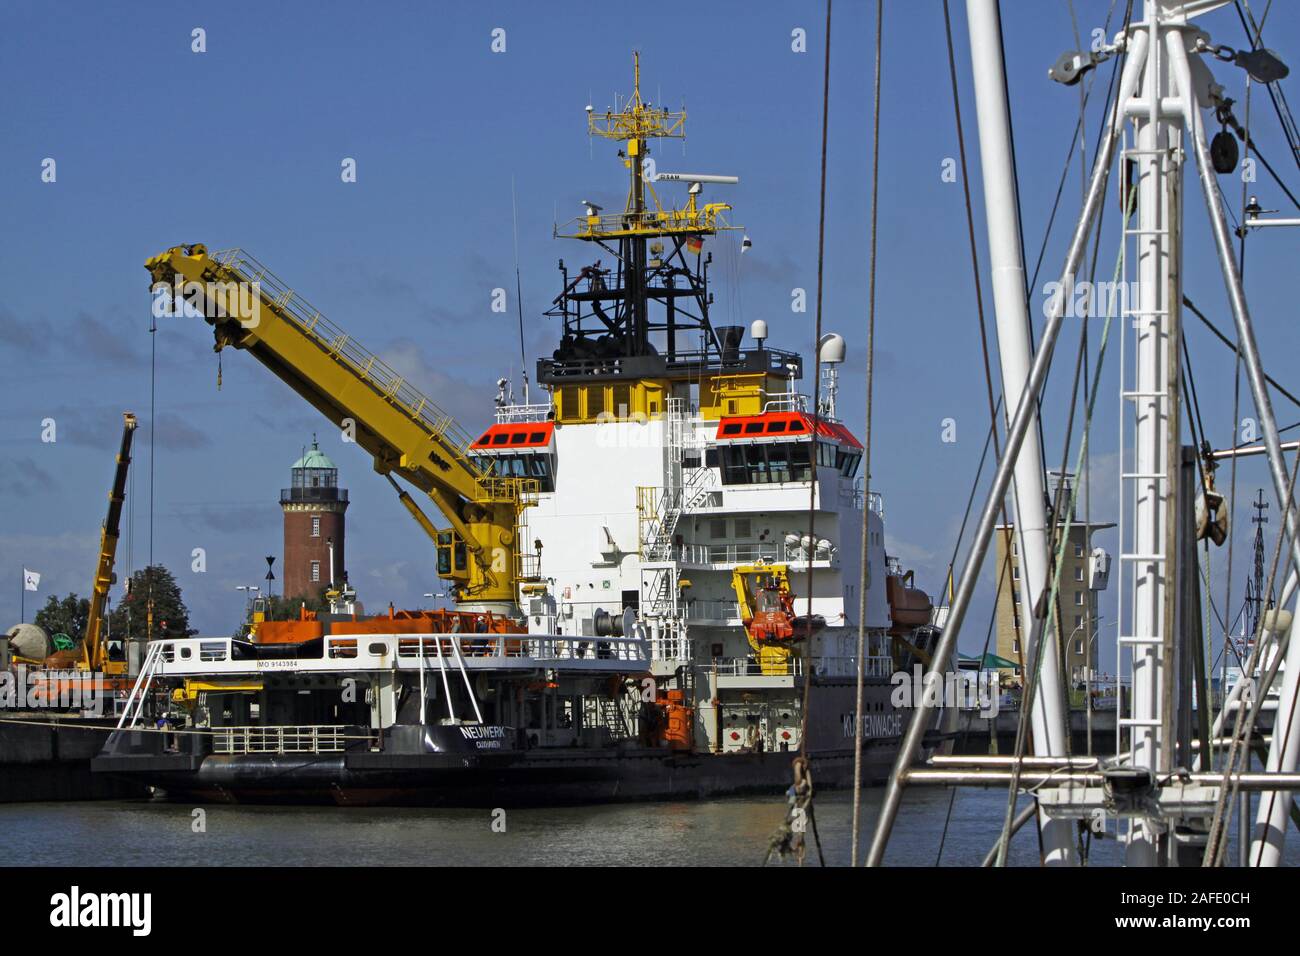 Küstenwachenboot Neuwerk in Cuxhaven Stock Photo